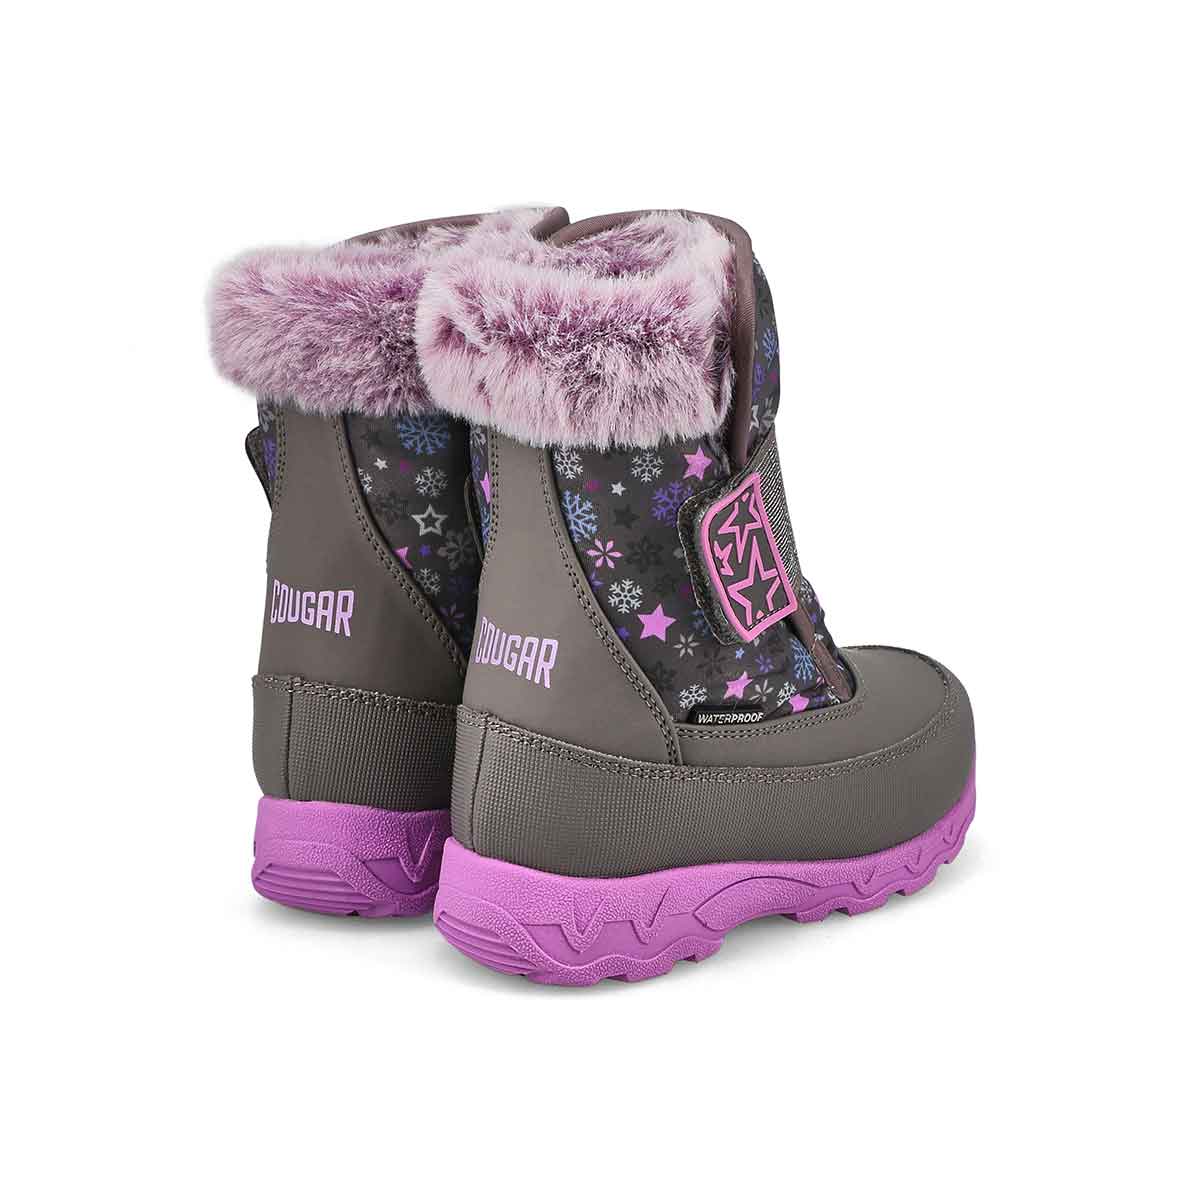 Infants' Soar Waterproof Winter Boot - Charcoal